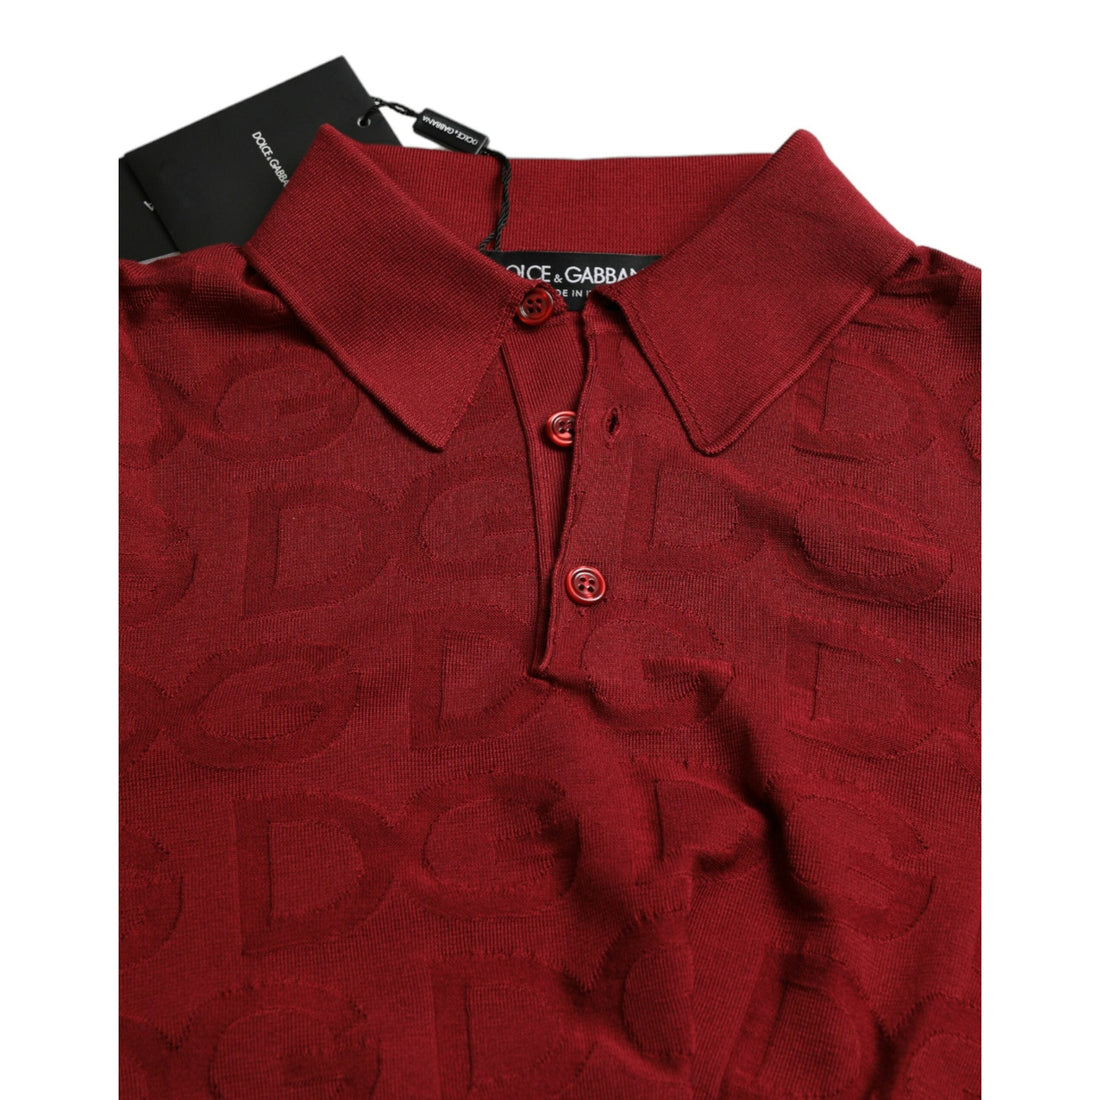 Dolce & Gabbana Maroon Collared Short Sleeve Silk T-shirt